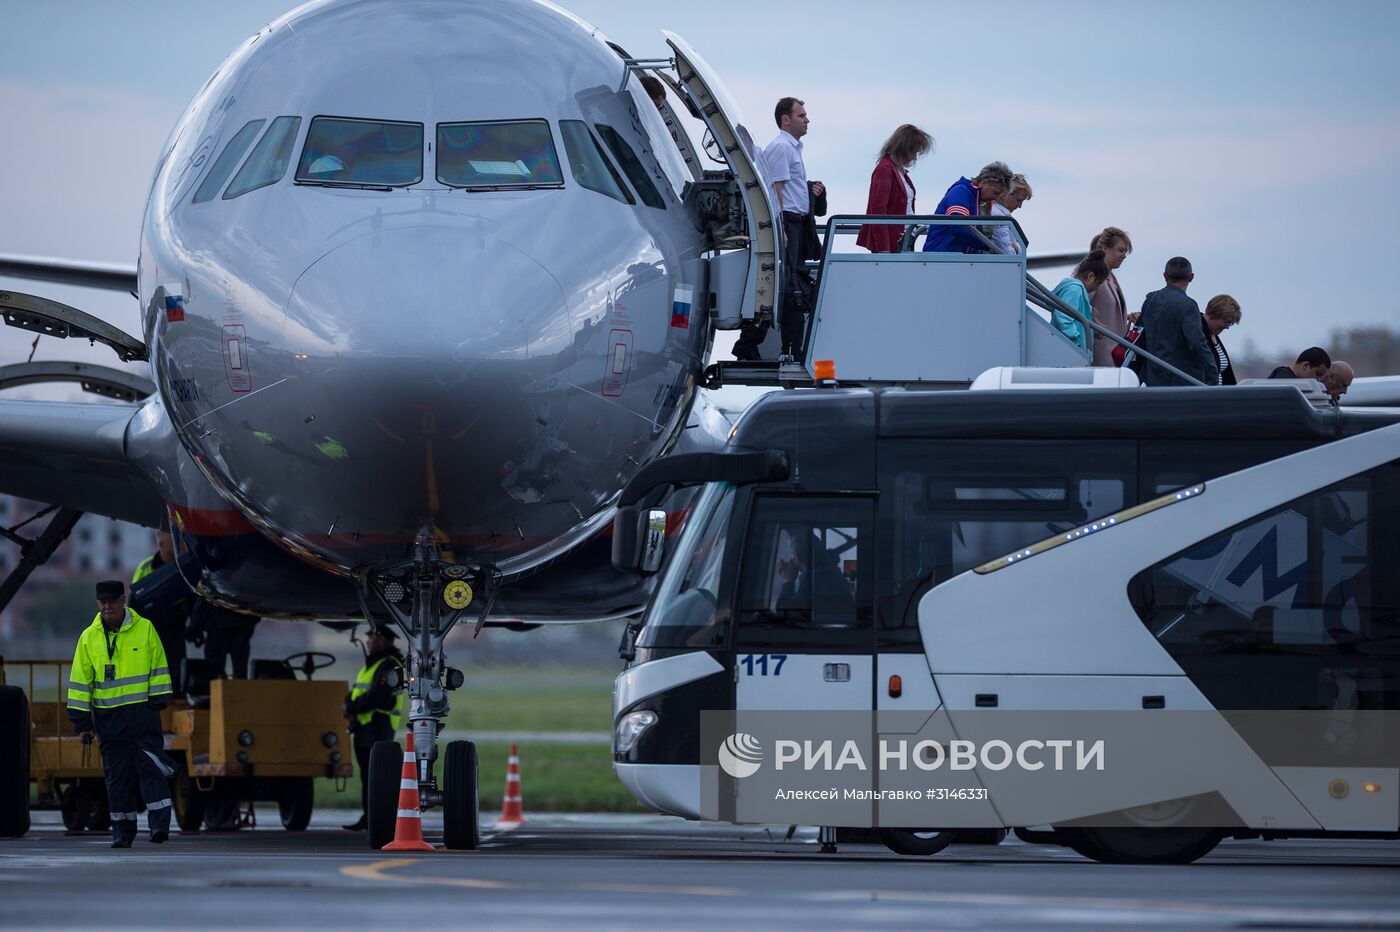 Самолеты в международном аэропорту "Омск-Центральный"